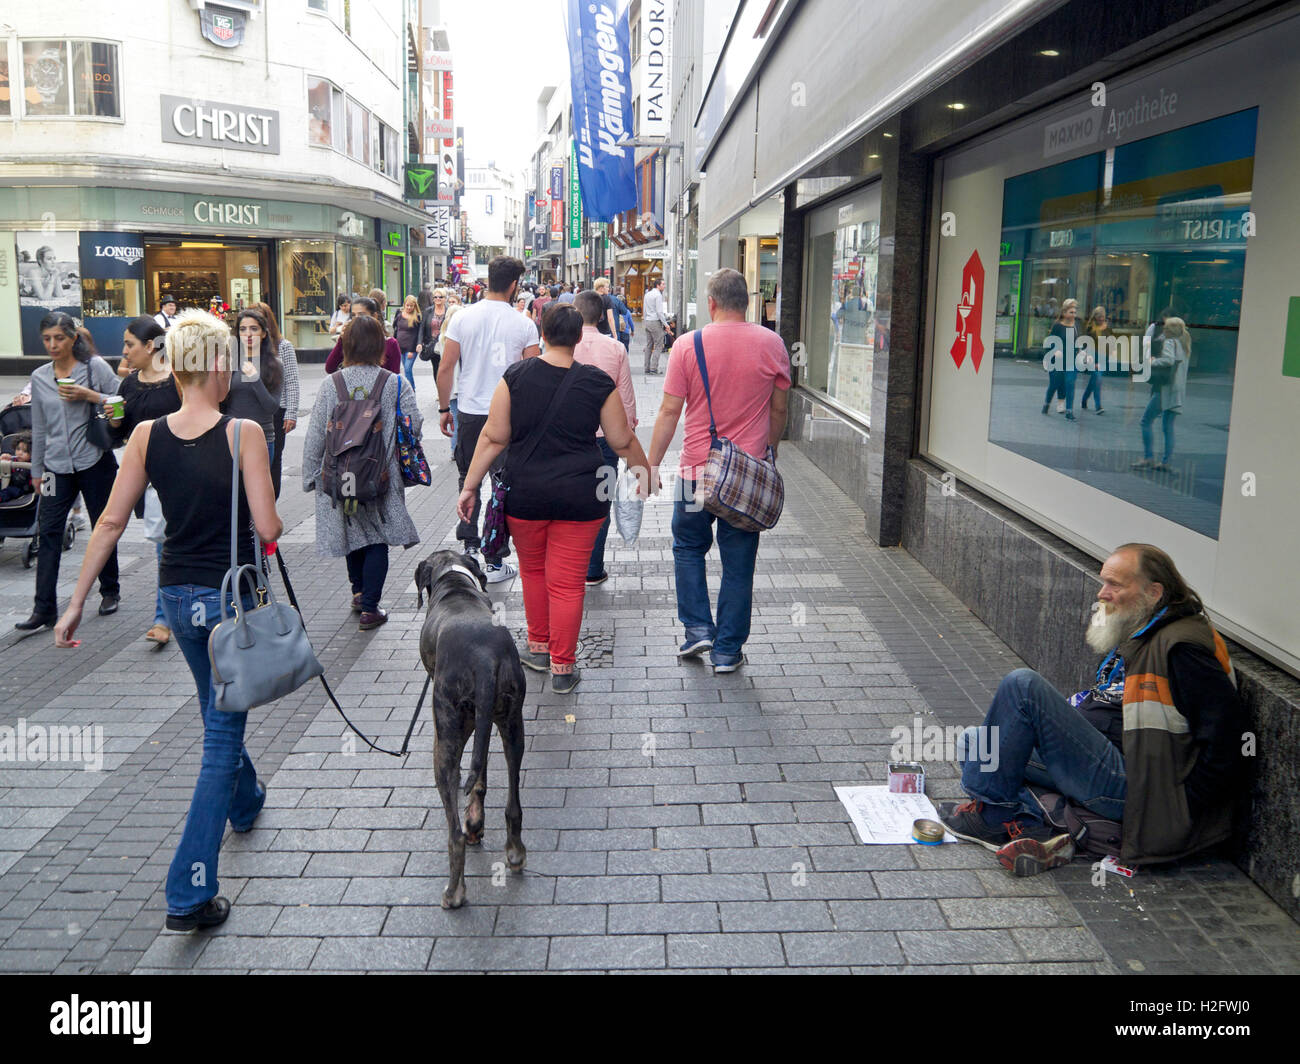 Straßenszene mit großer Hund und Vagabund auf Einkaufsstraße in Köln, Deutschland Stockfoto